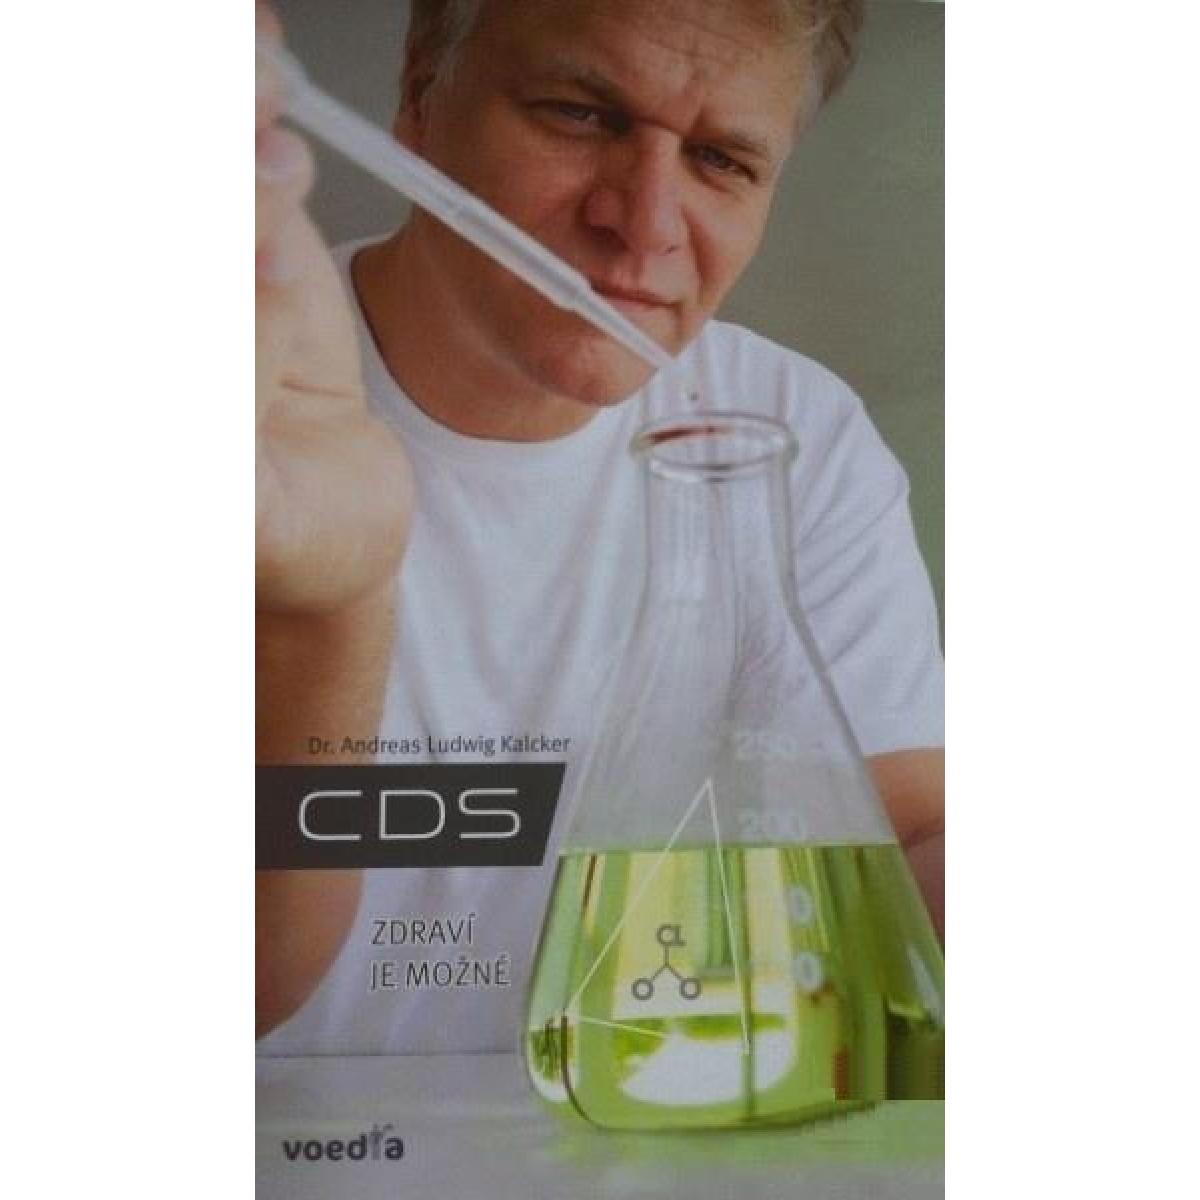 
            CDS - zdraví je možné - Kalcker Ludwig Andreas, Dr.